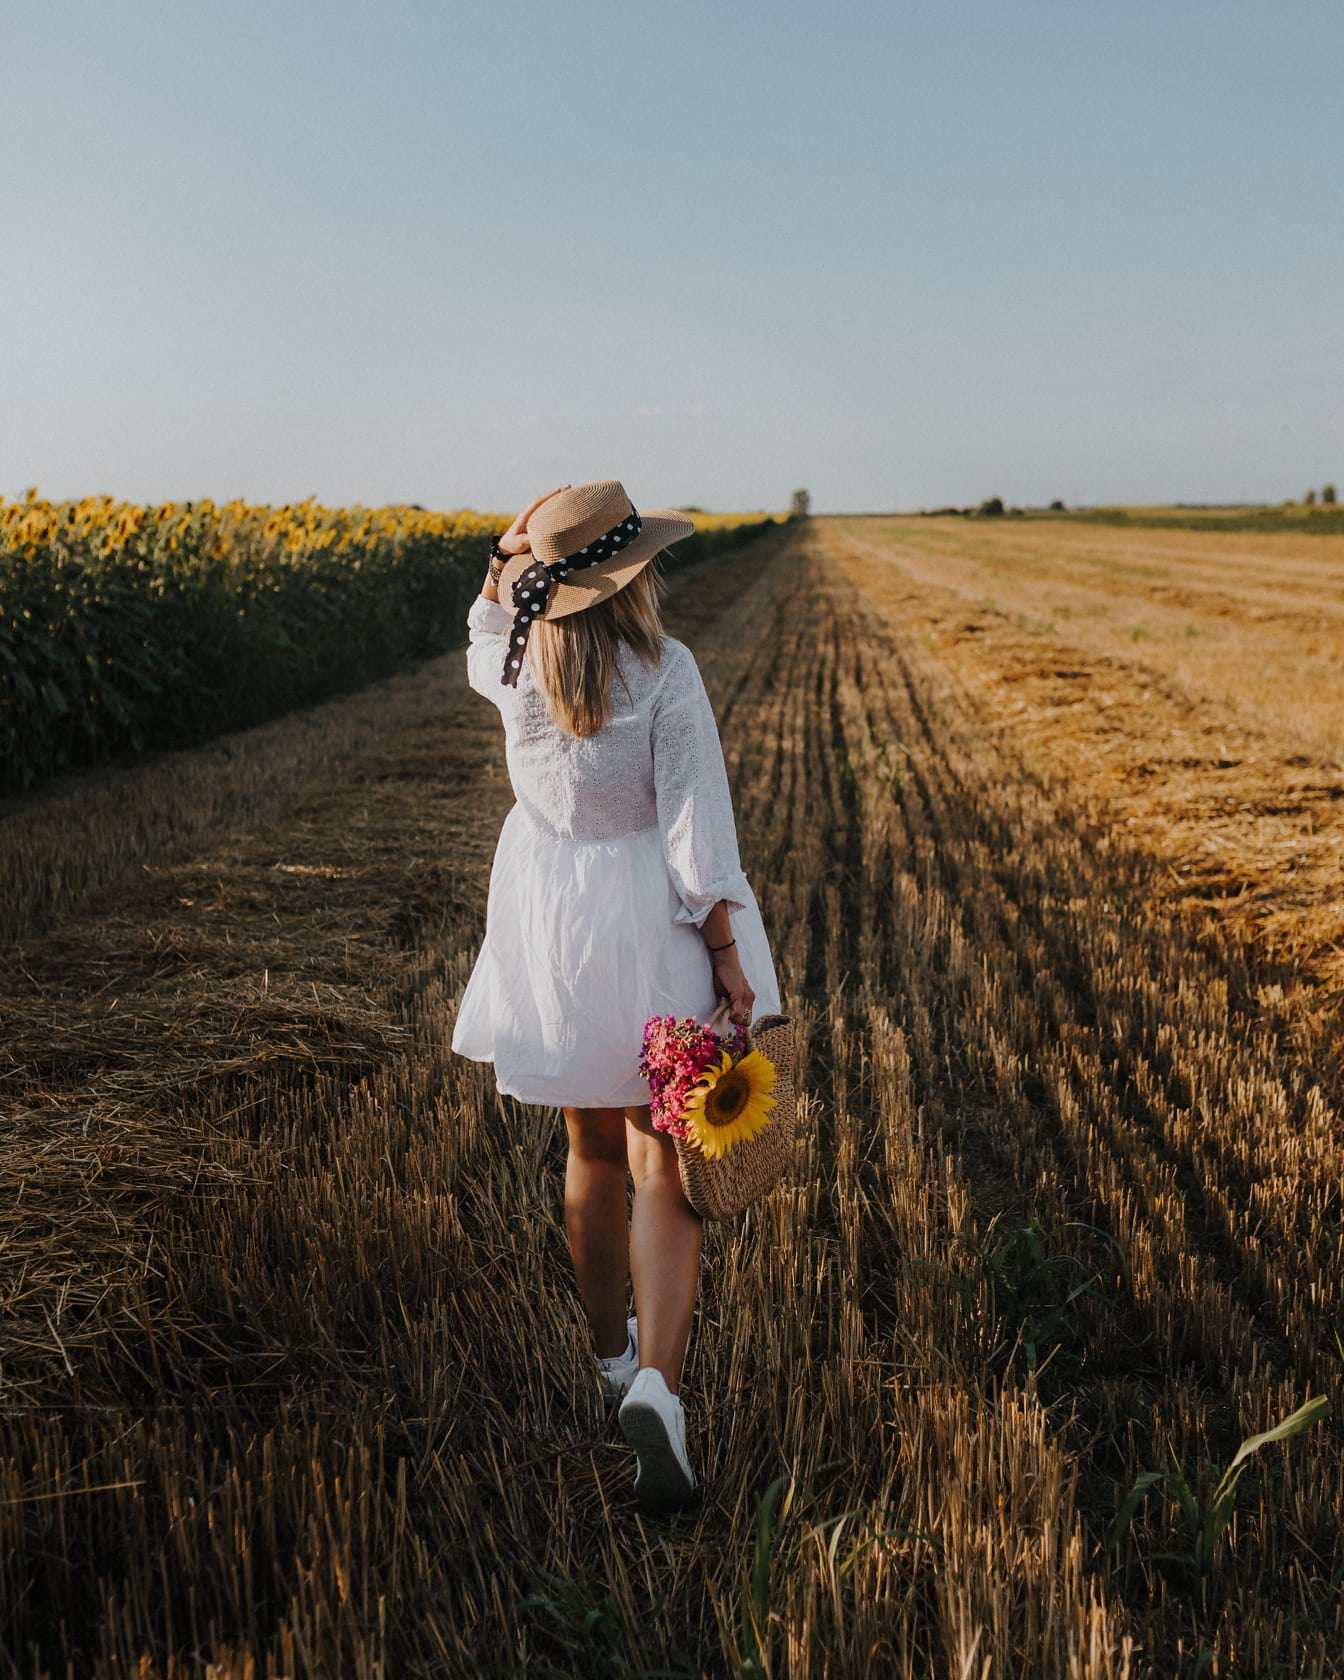 Rochie albă și pălărie pe femeie în lan de grâu